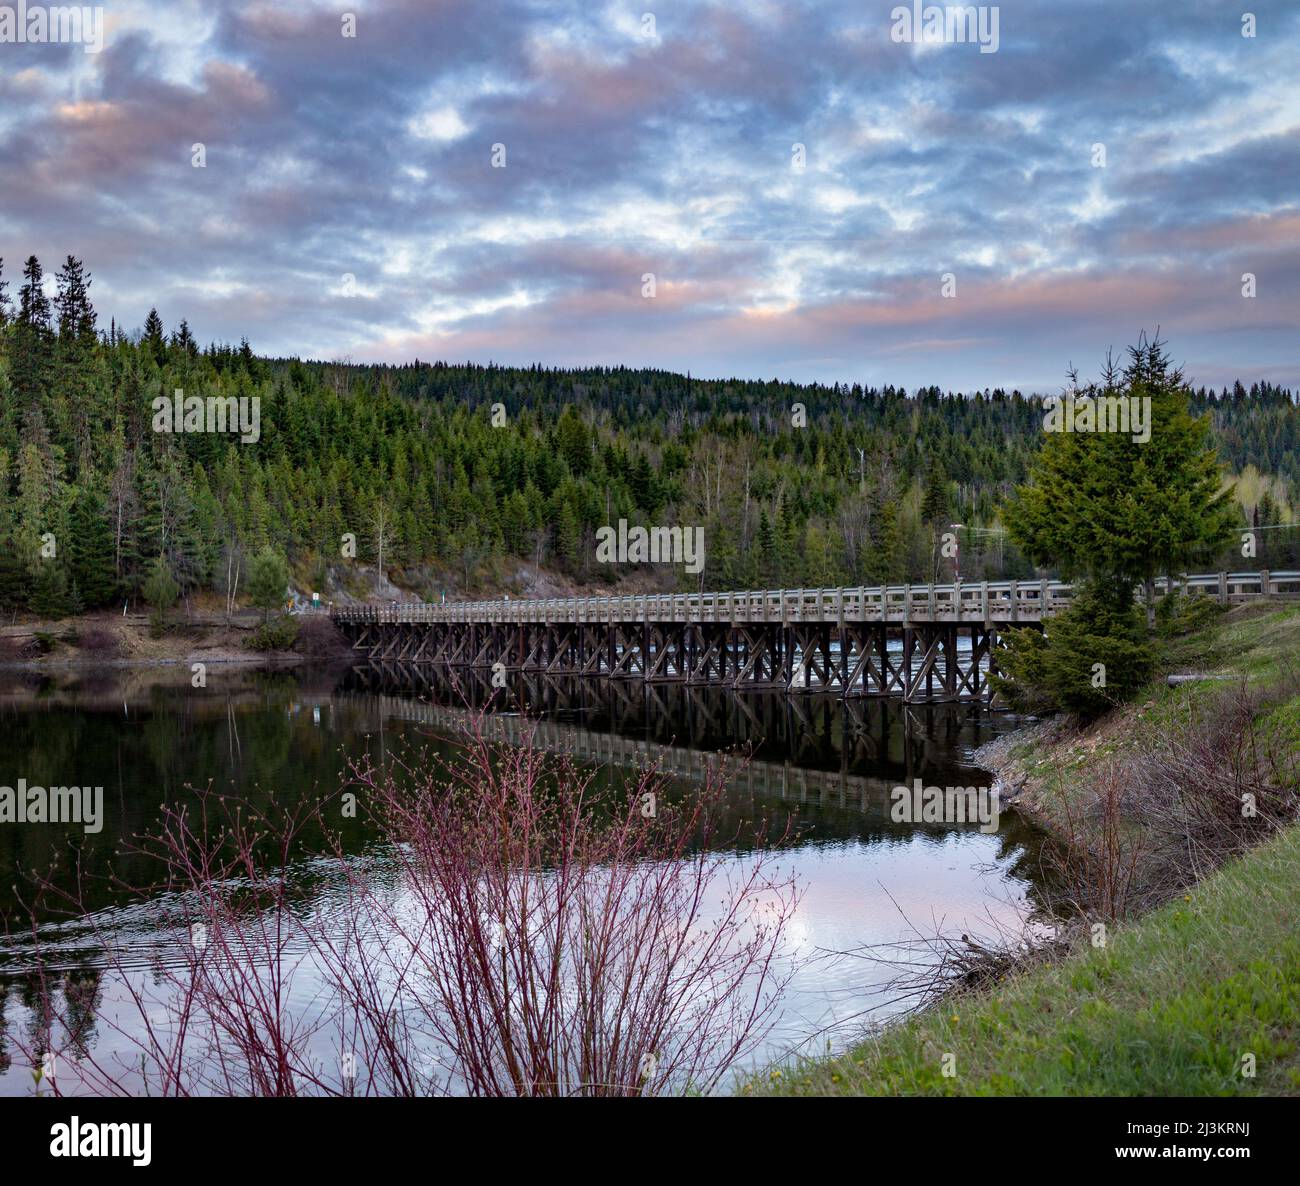 Puente de carretera que pasa sobre el agua en Interior BC, Canadá; probable, British Columbia, Canadá Foto de stock